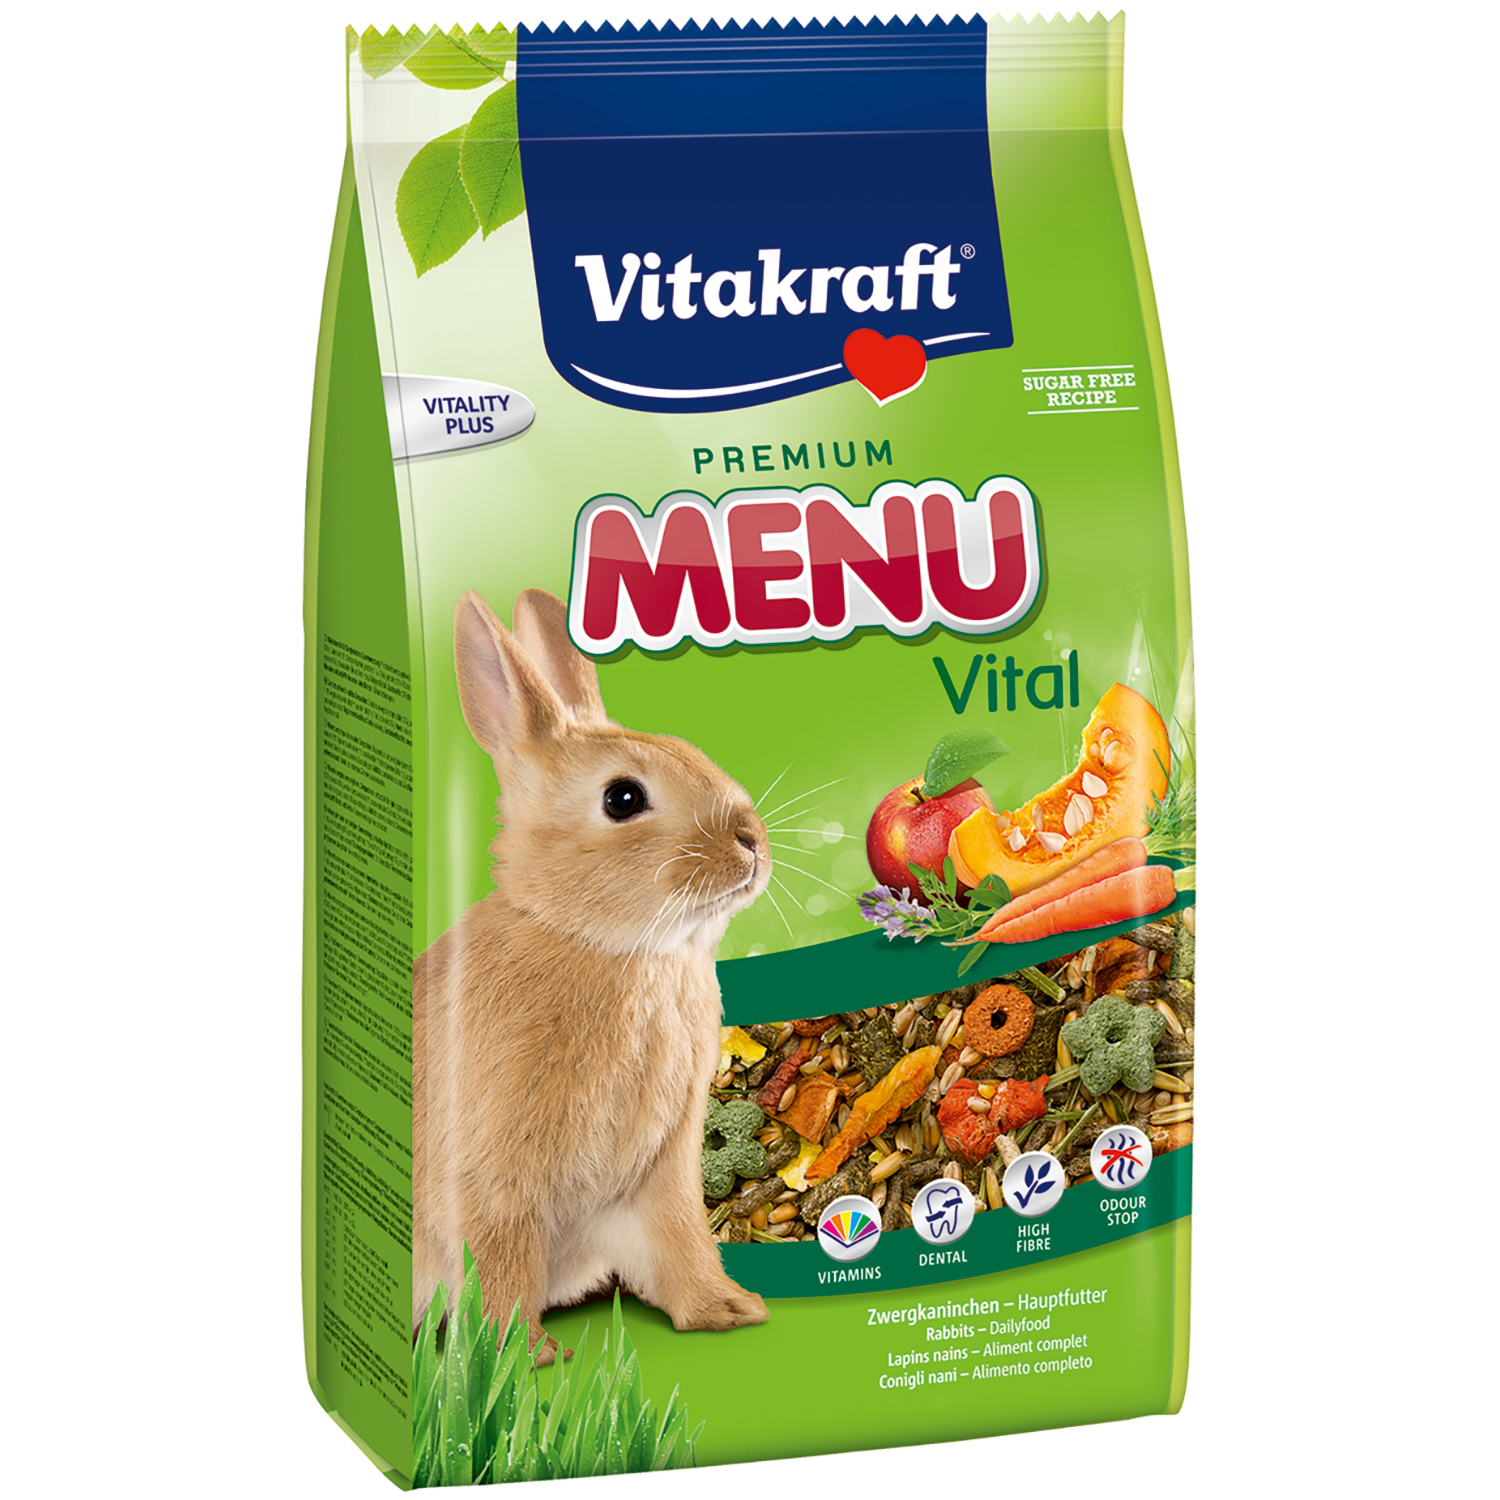 Vitakraft Premium Menu Vital Rabbit Food 1kg Image